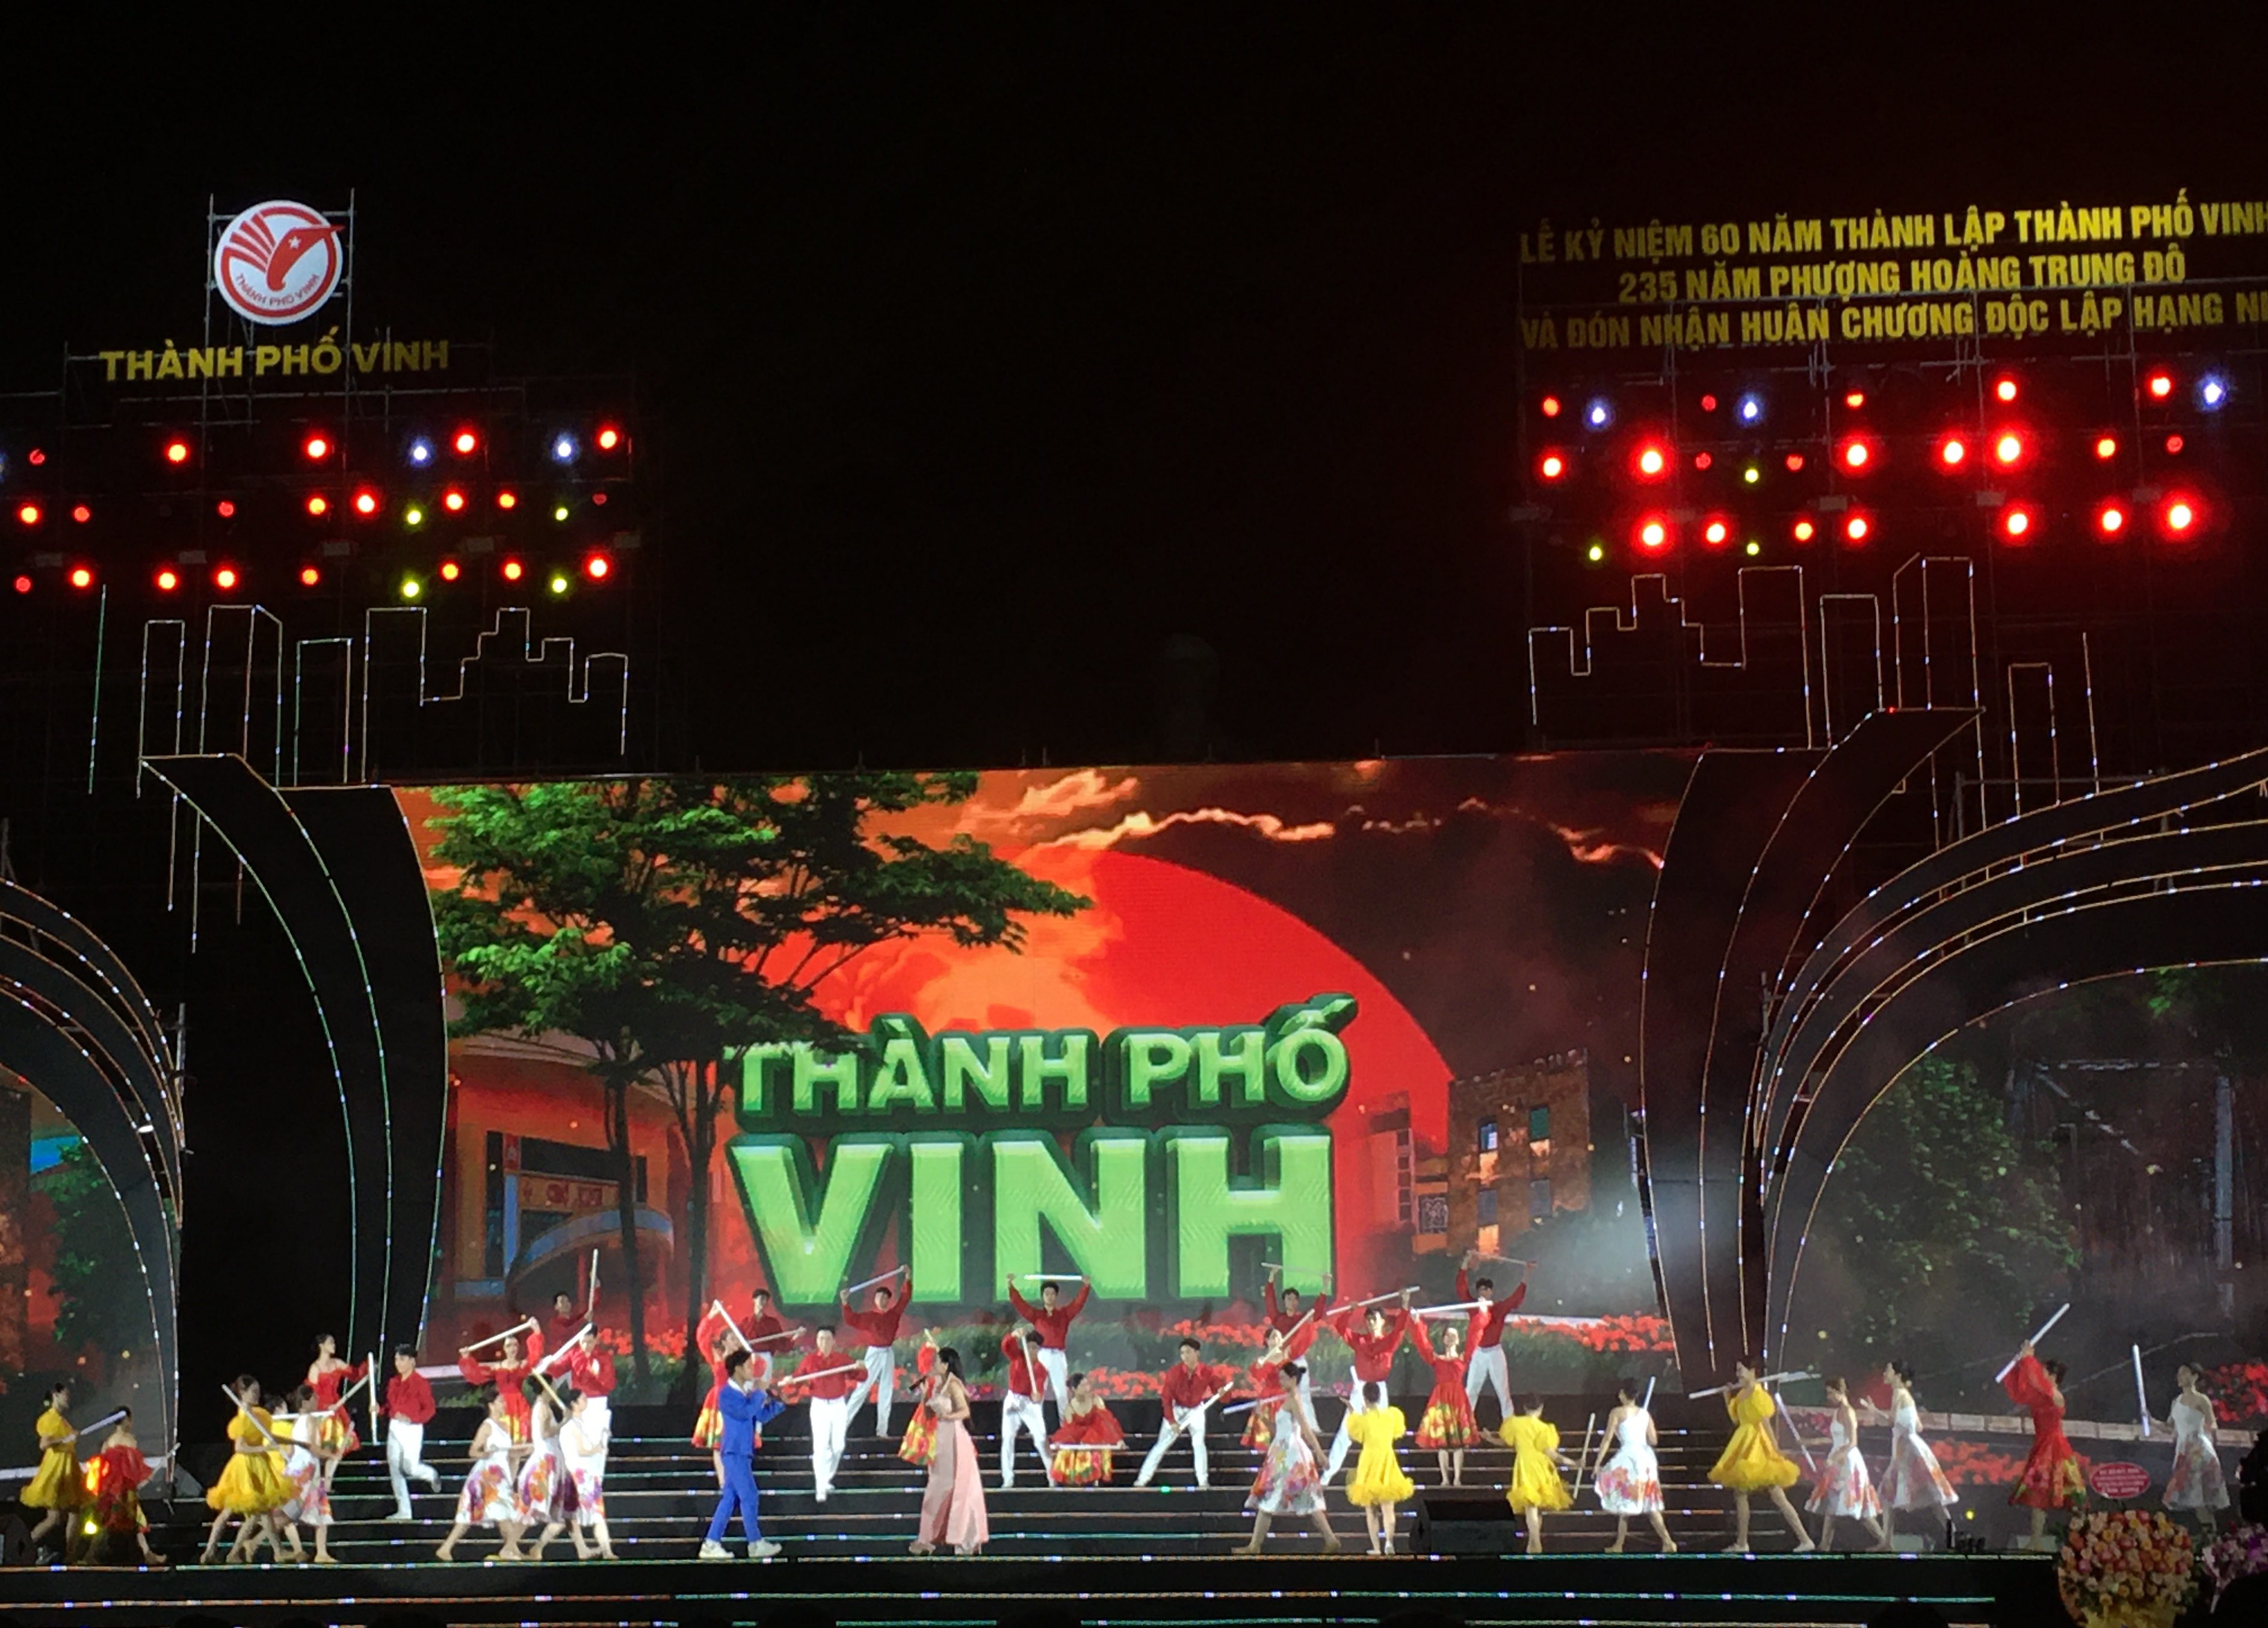 Thành phố Vinh long trọng kỷ niệm 60 năm thành lập, 235 năm Phượng Hoàng Trung Đô, đón nhận Huân chương Độc lập hạng Nhì